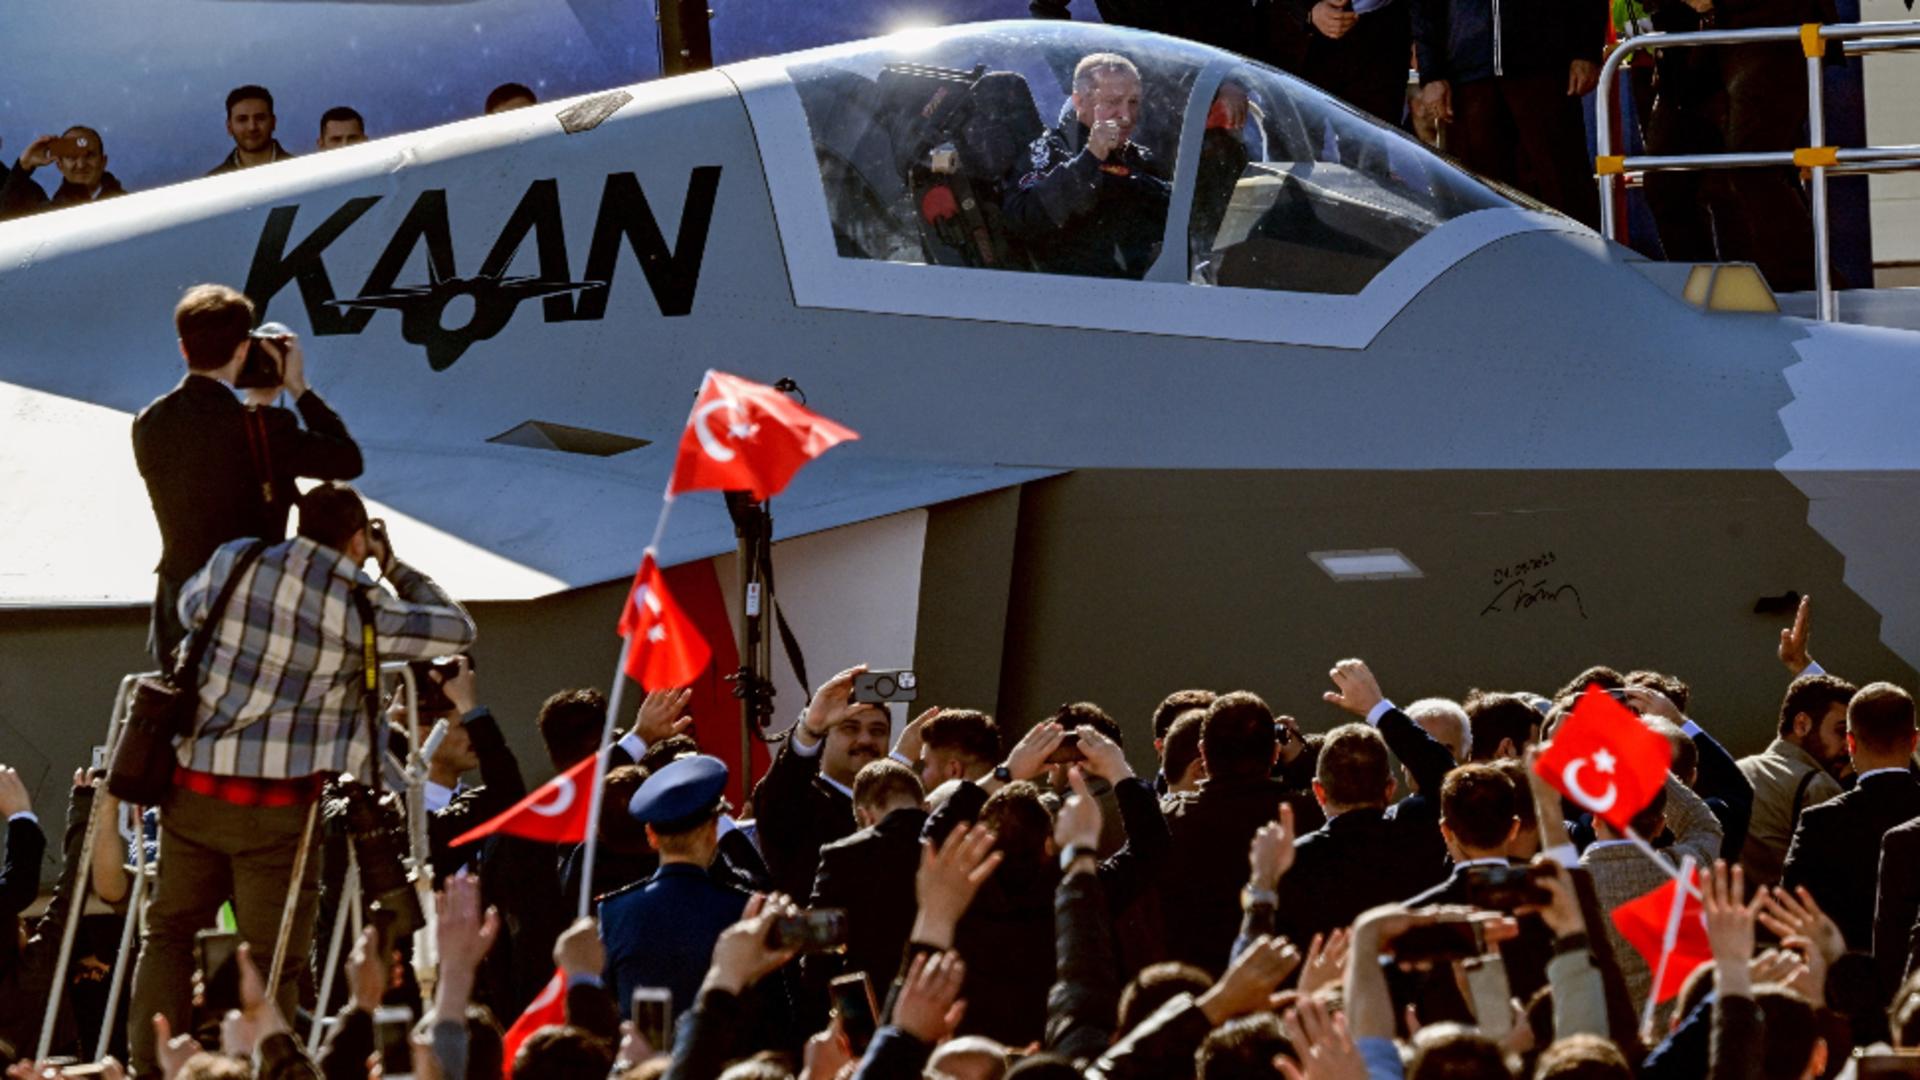 turcia-a-testat-propriul-superavion-kaan-care-va-lua-locul-renumitelor-f-16-americane